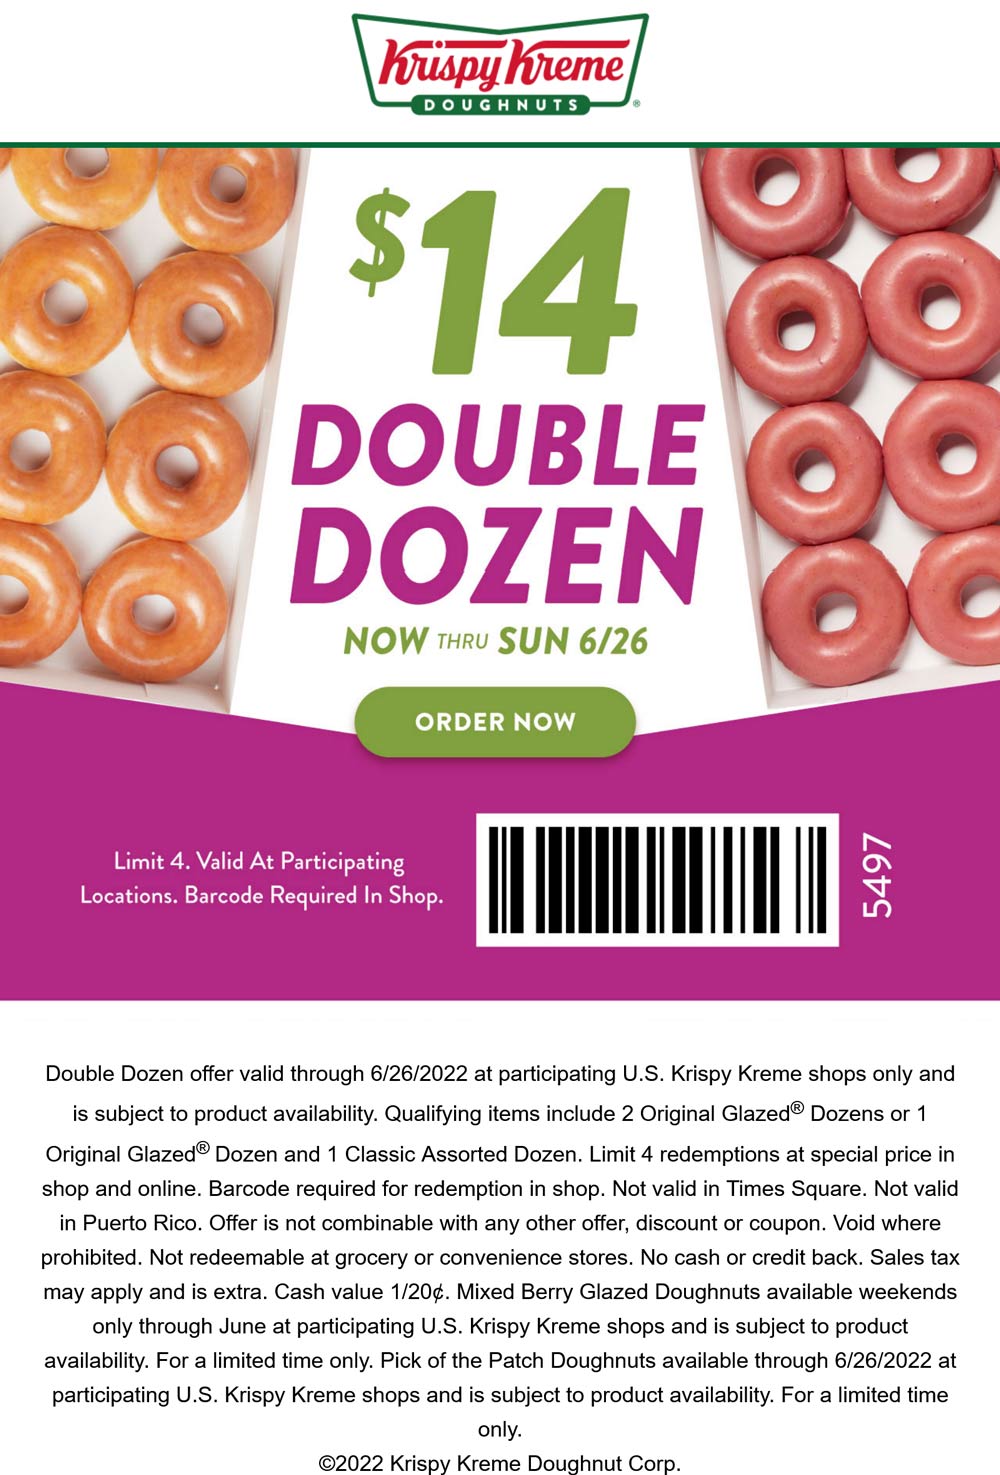 Krispy Kreme coupons & promo code for [August 2022]